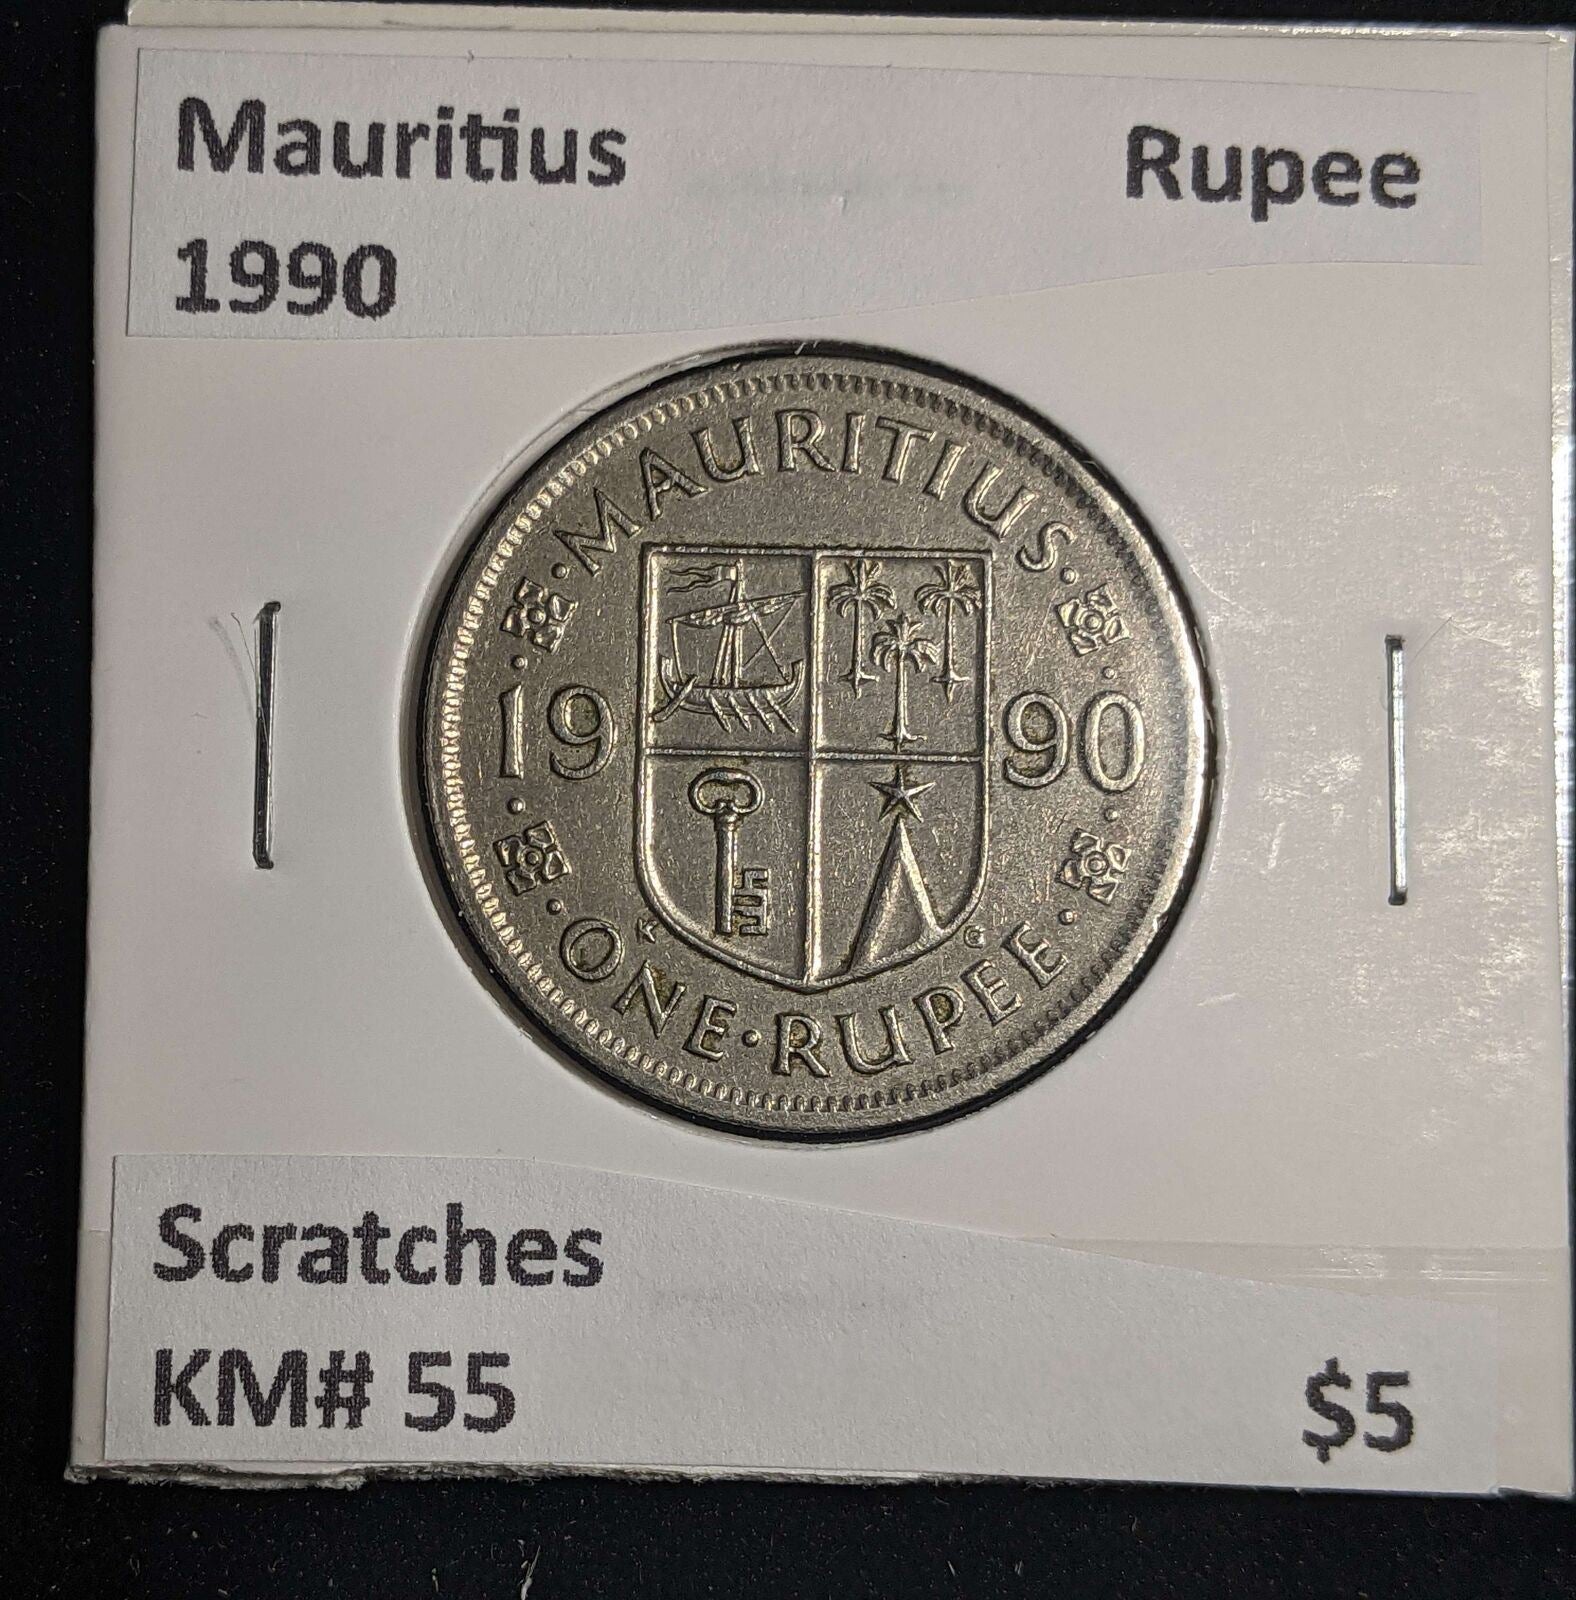 Mauritius 1990 Rupee KM# 55 Scratches #0052#13A